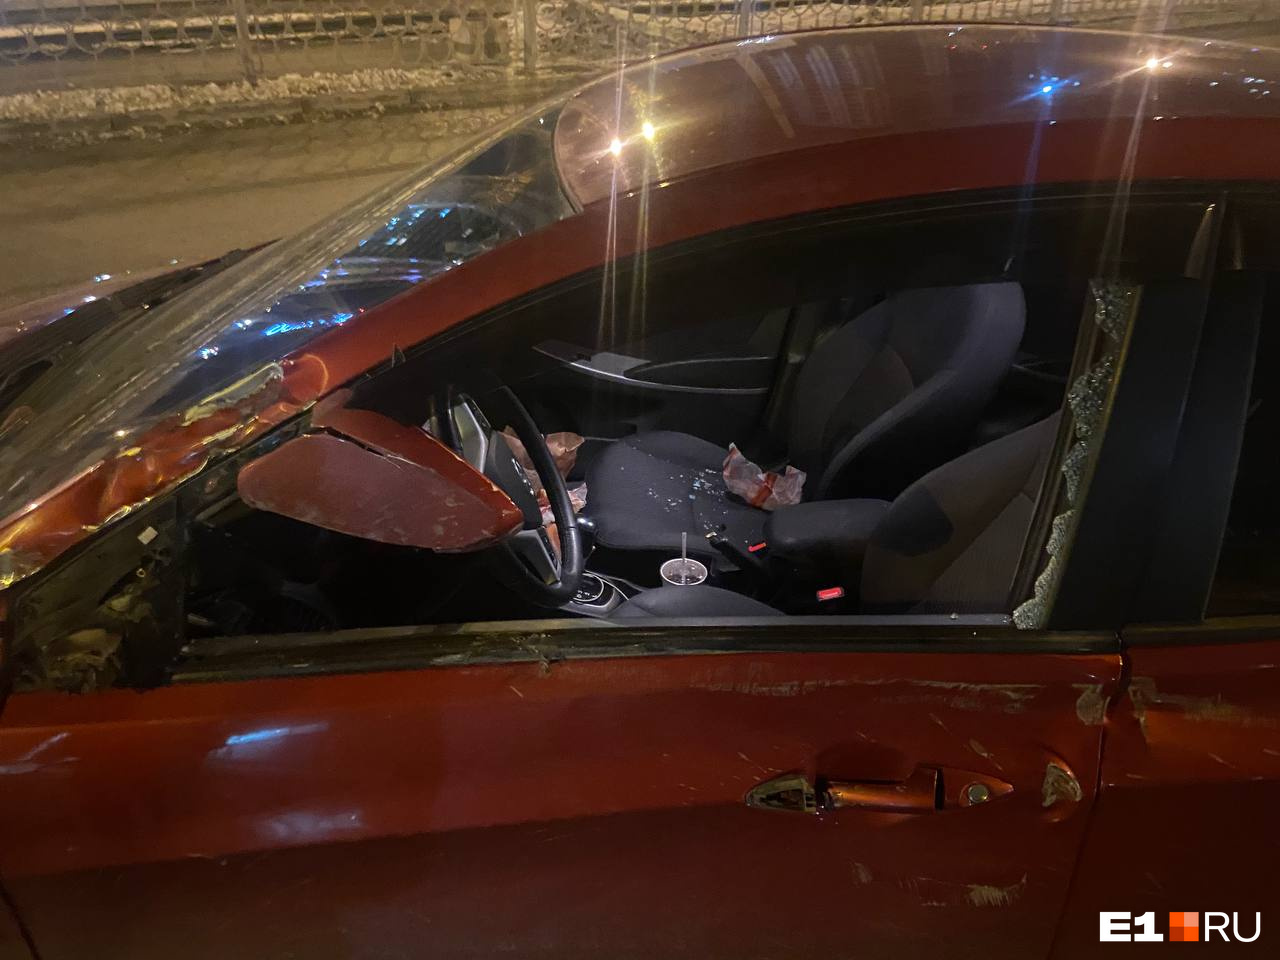 У машины повреждены кузов, колесо, разбиты стекло и боковое зеркало